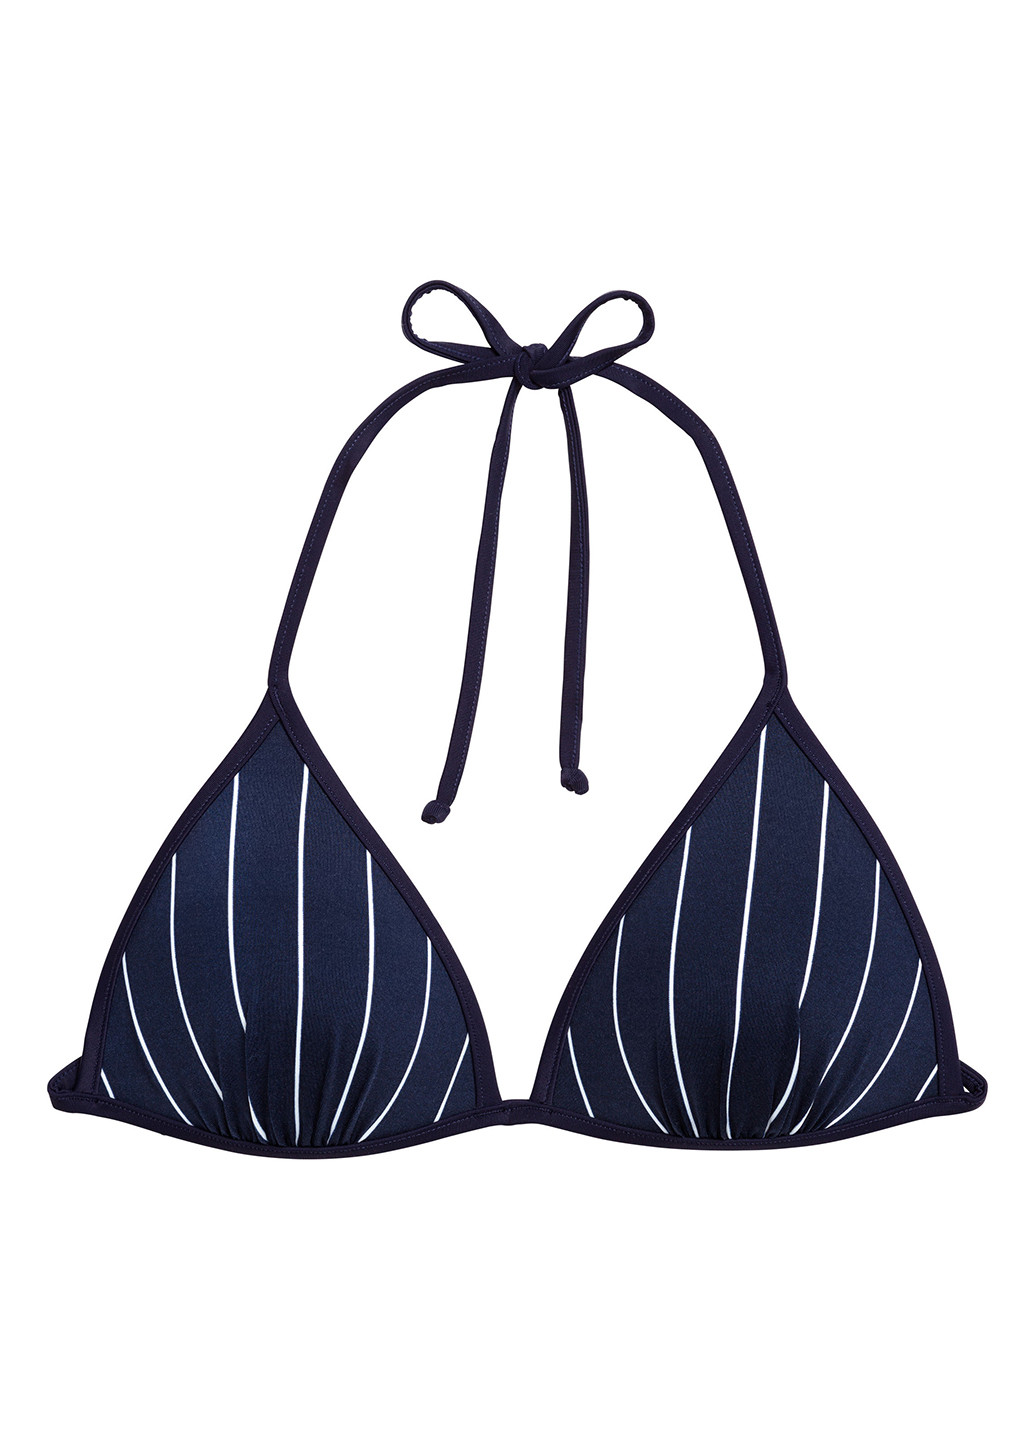 Купальный лиф H&M бикини полоска тёмно-синий пляжный